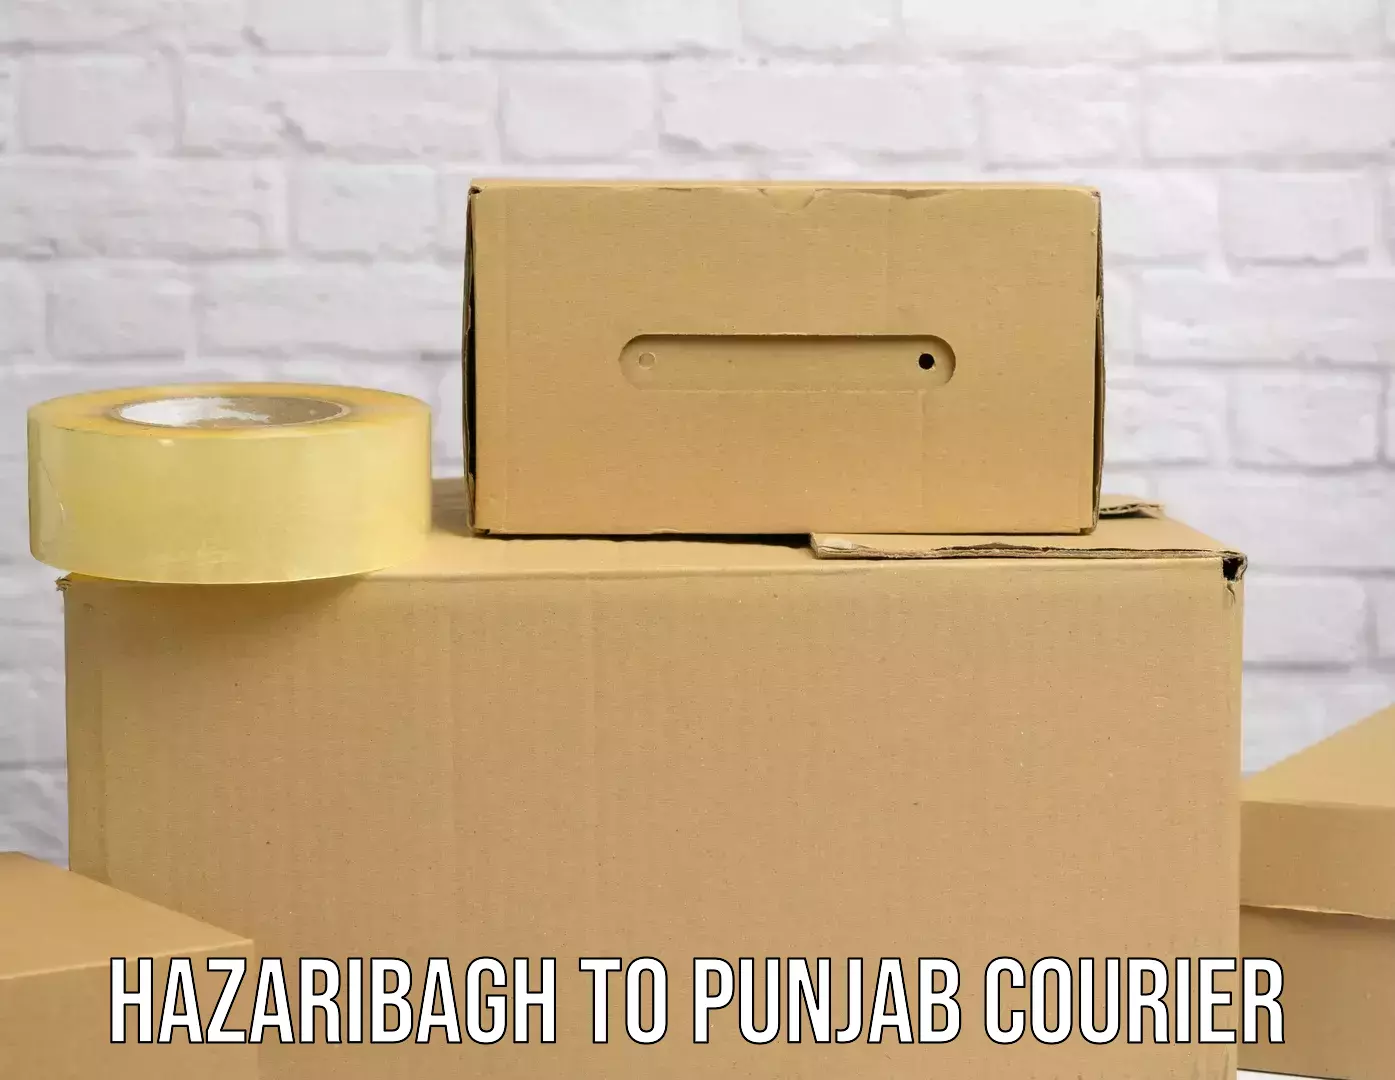 Package forwarding Hazaribagh to Punjab